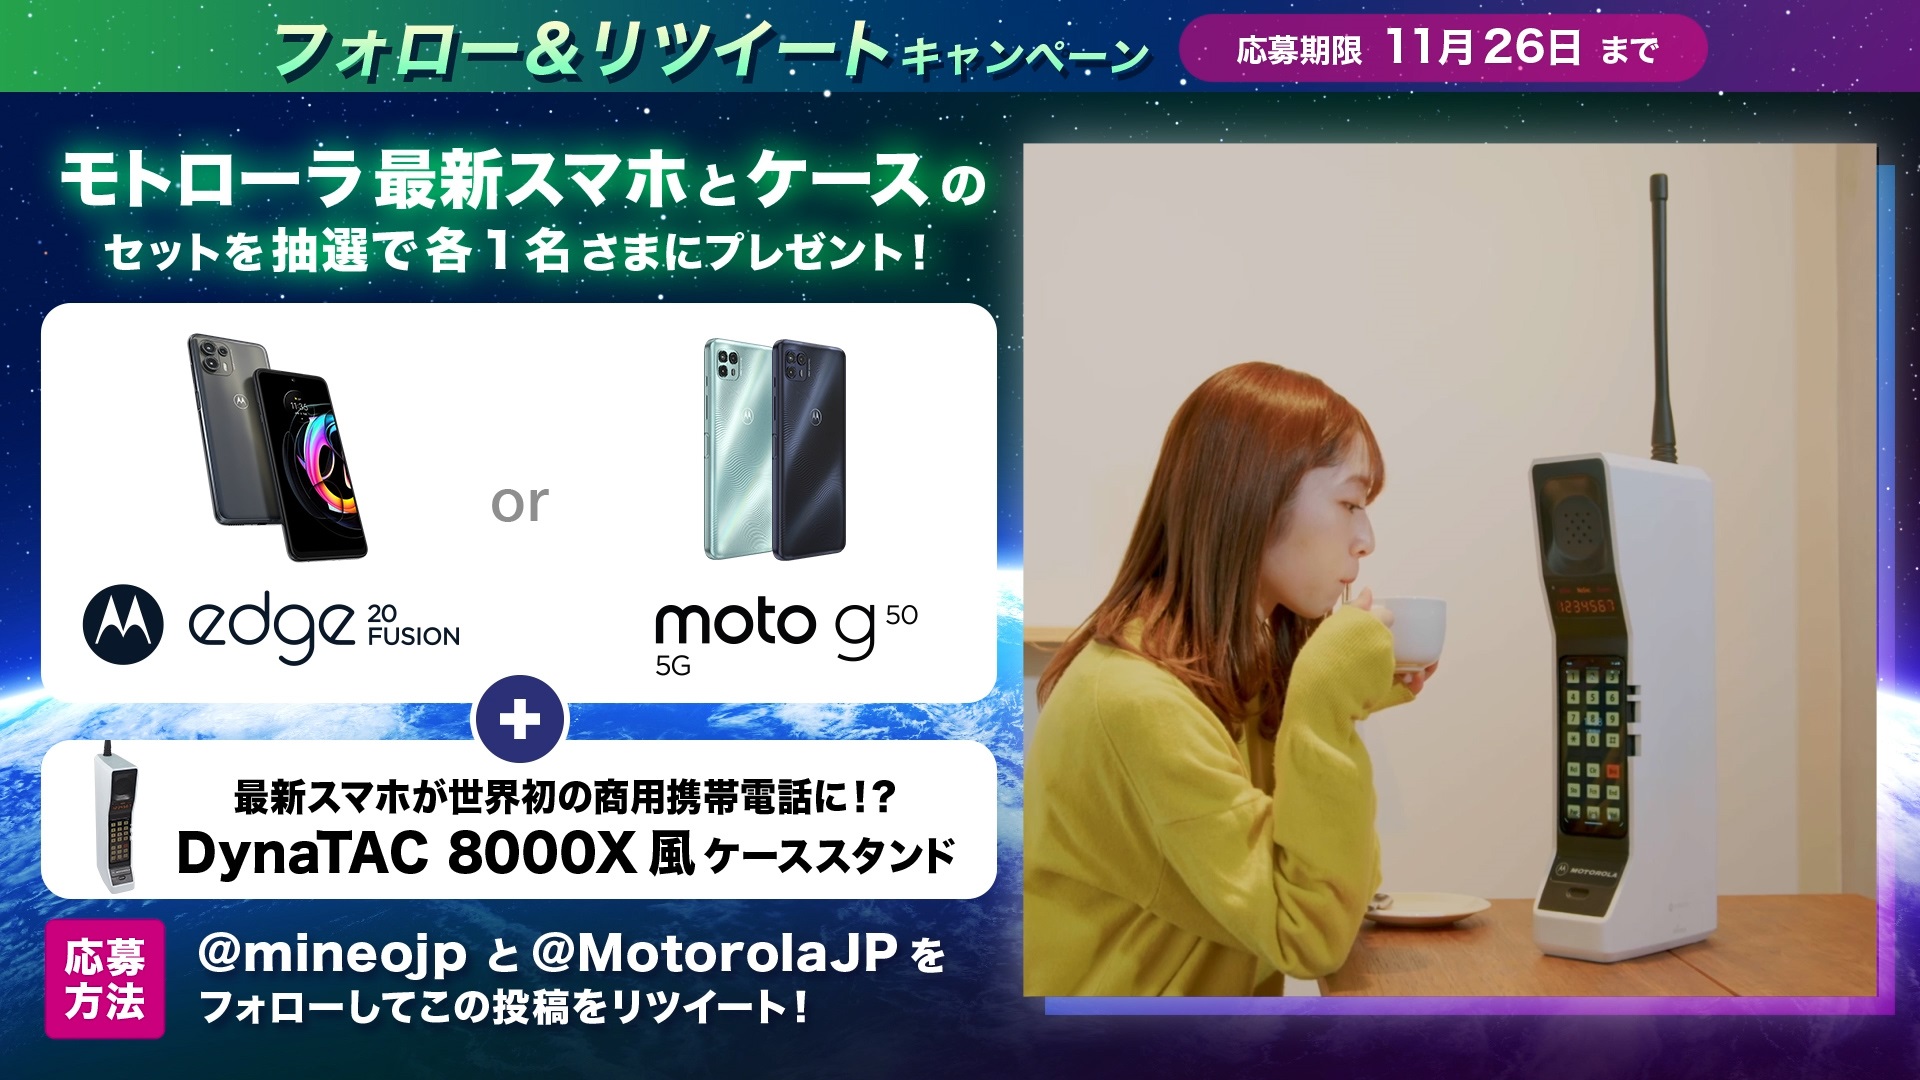 mineo新端末「Xiaomi 11T」「motorola edge 20 fusion」の販売開始について │ お知らせ │ オプテージ